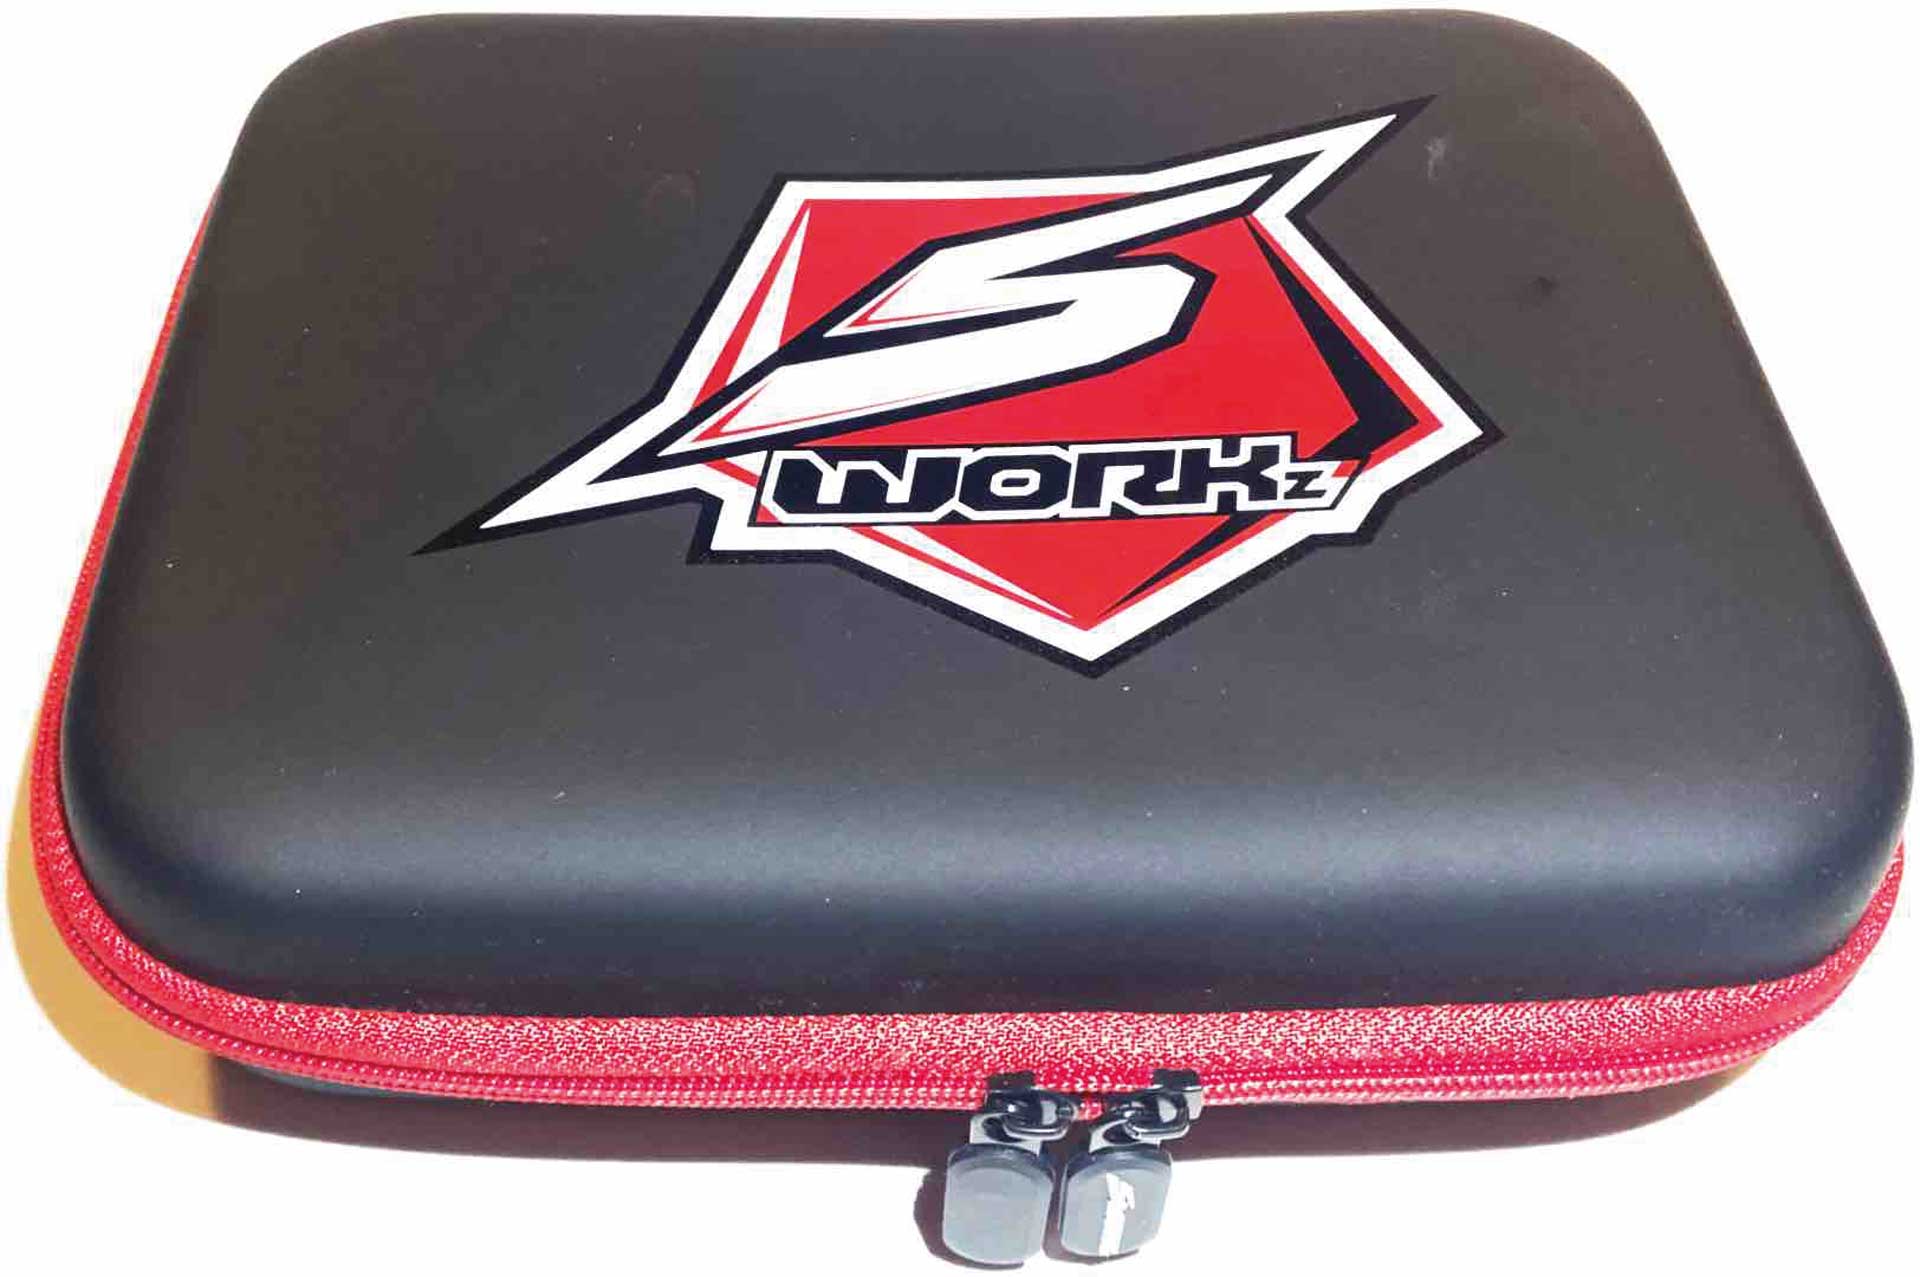 SWORKZ Hard Case Tasche mit Intelligent Foam LxBxH: 20x16x6cm